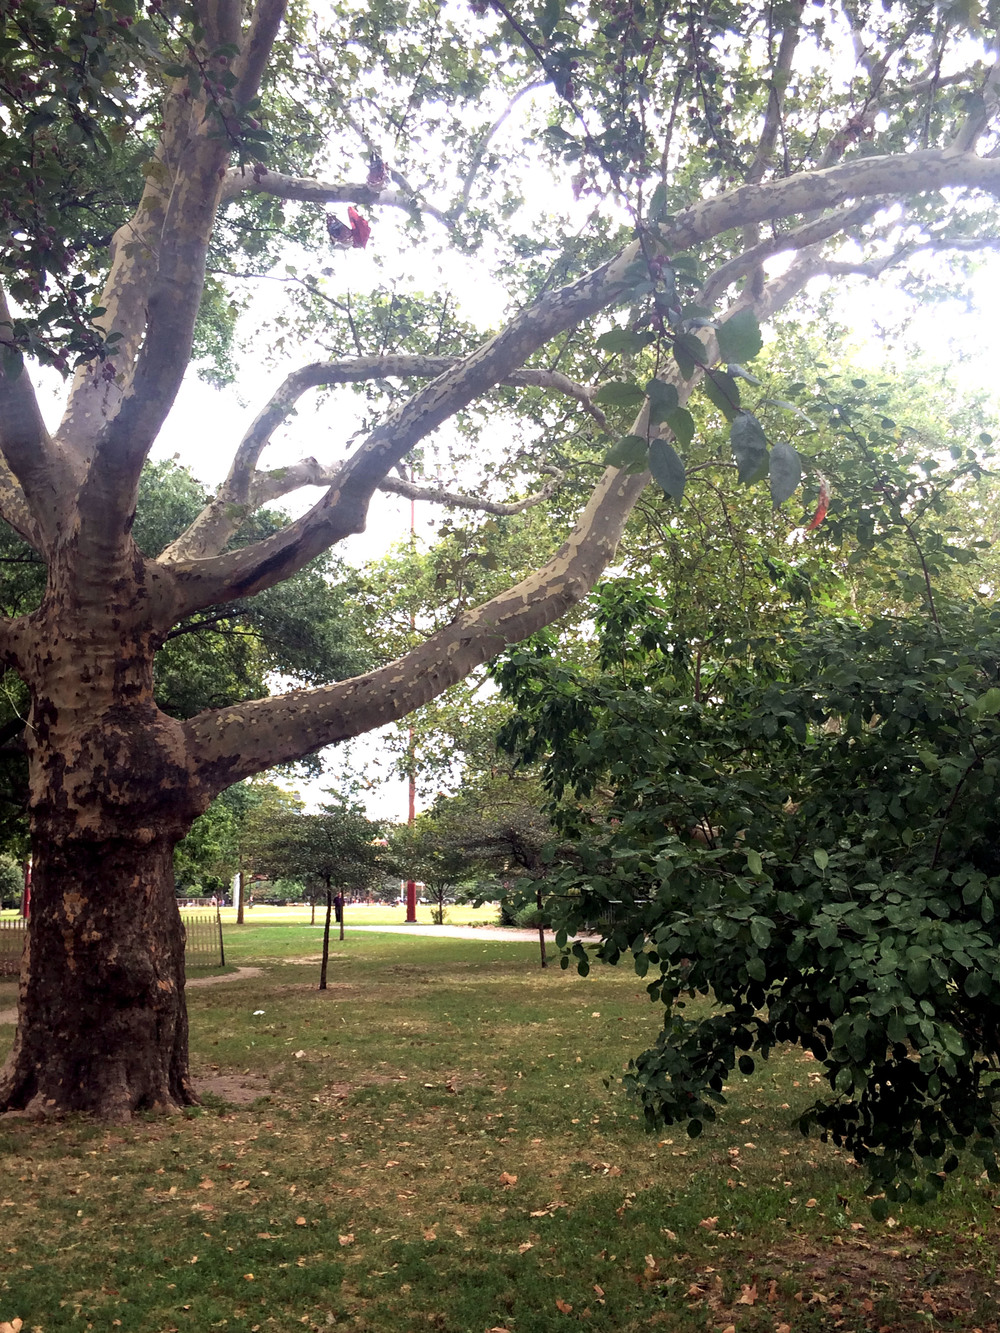 A London Plane Tree growing in McCarren Park